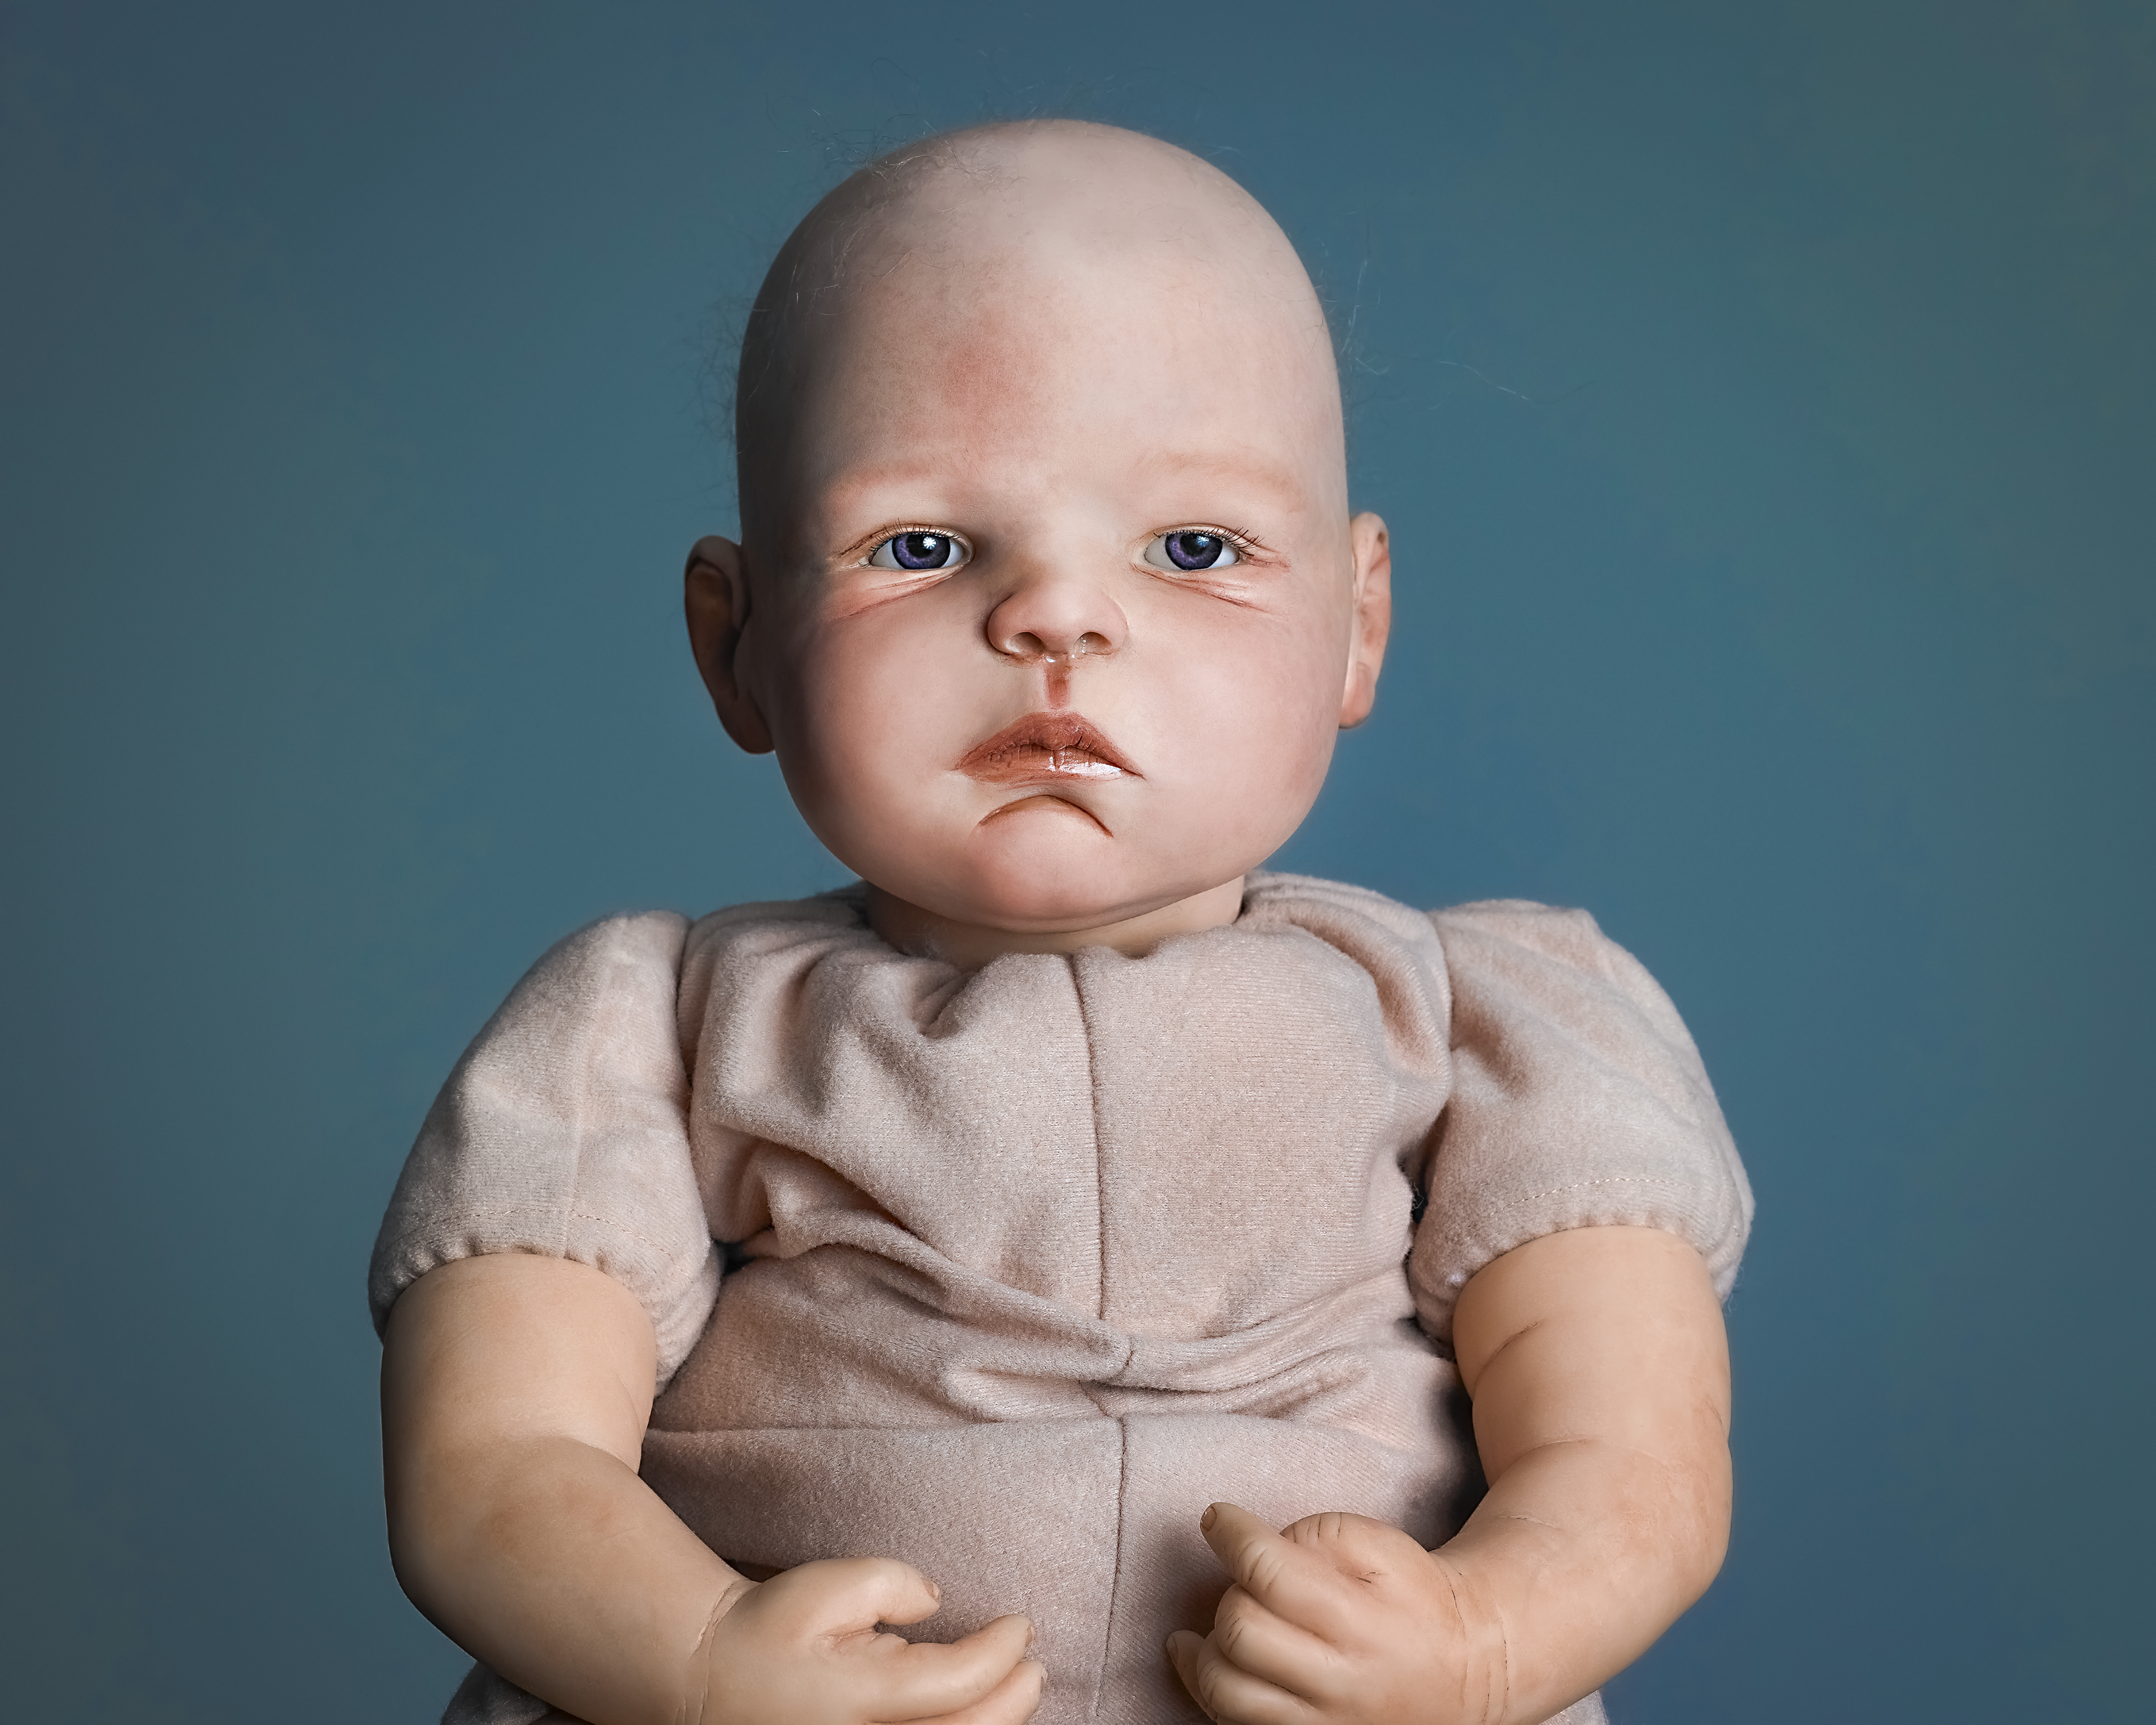 Cradling Hyper-Realistic Babies In Uncanny Valley - Flashbak